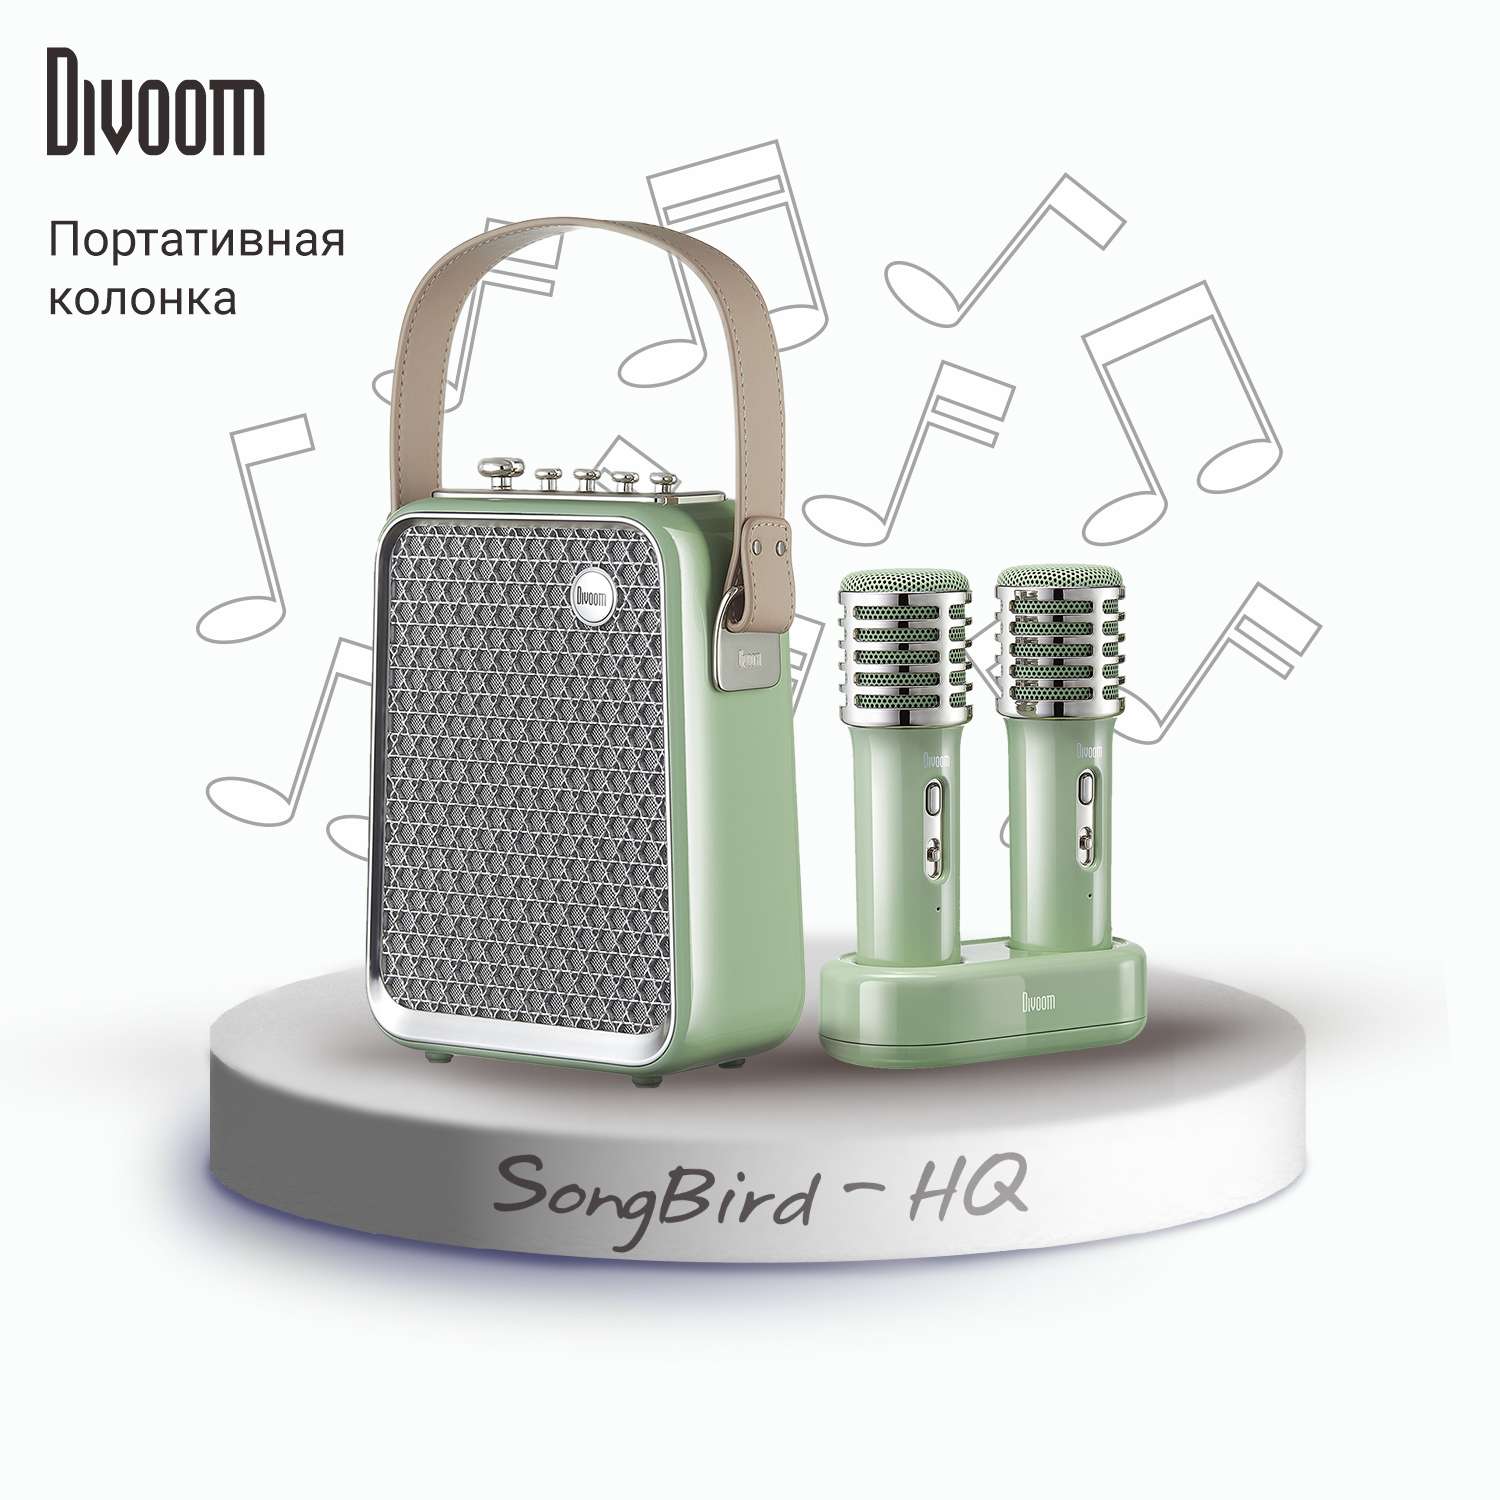 Беспроводная колонка DIVOOM портативная с двумя микрофонами SongBird-HQ зеленая - фото 1